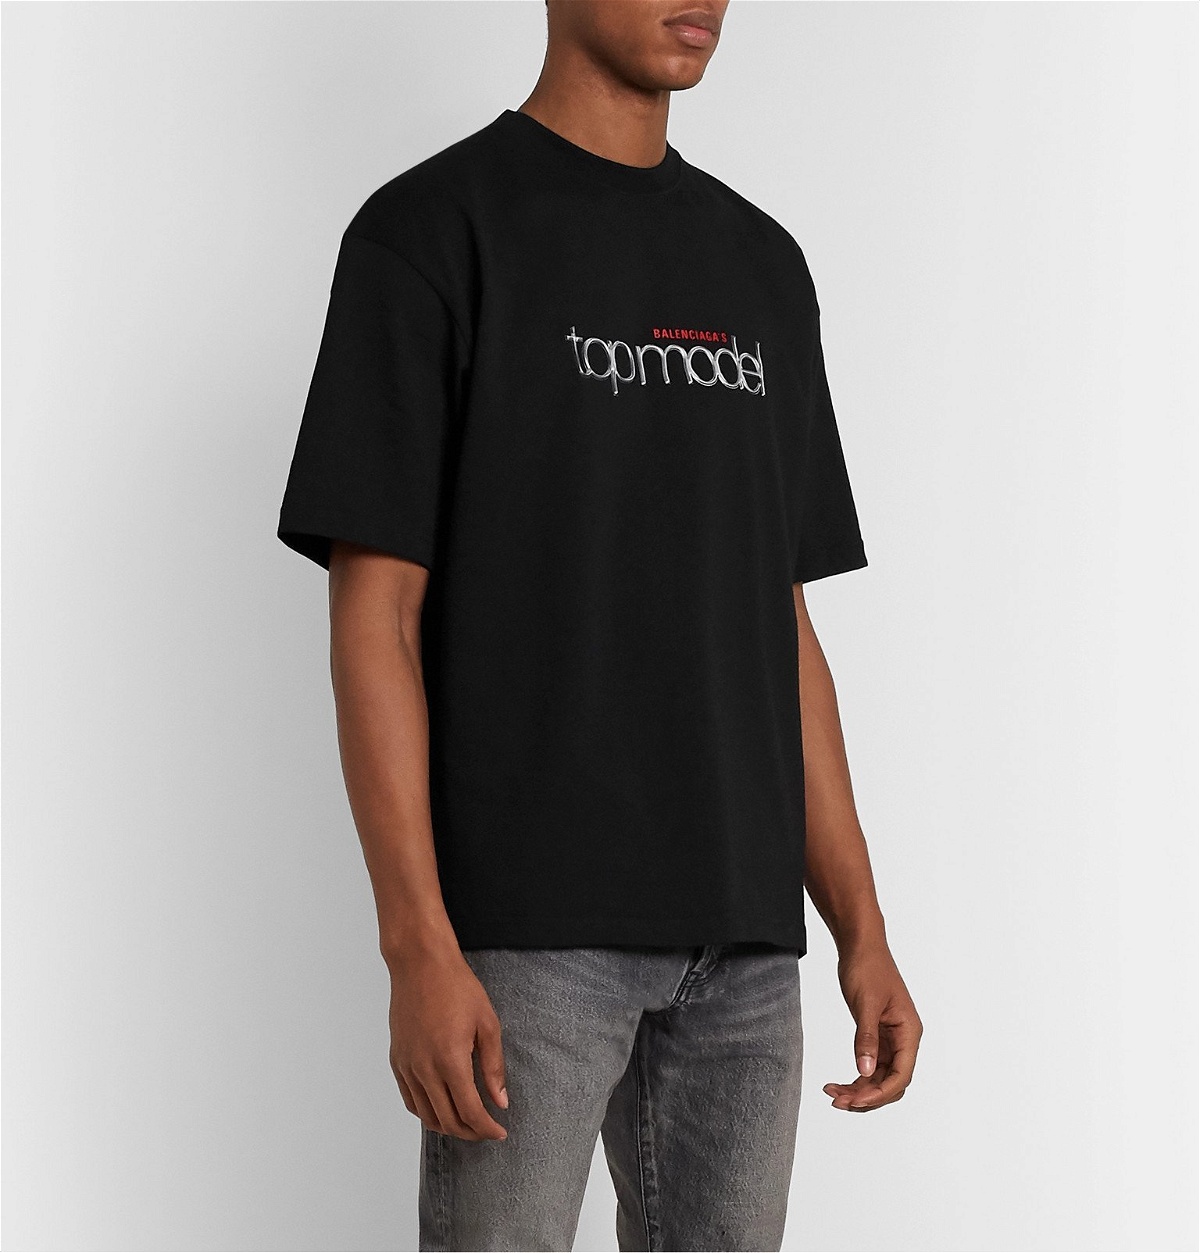 Balenciaga - T-Shirt Appliquéd Balenciaga Black Logo-Print Cotton-Jersey Top Model 